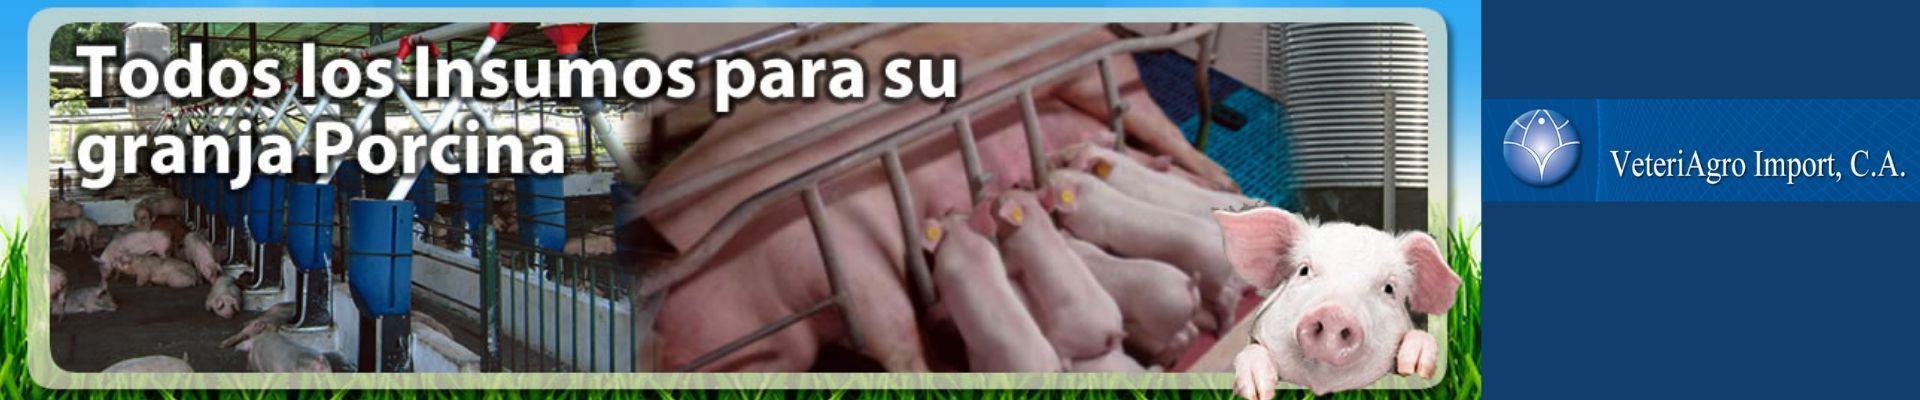 equipamiento granjas porcinas